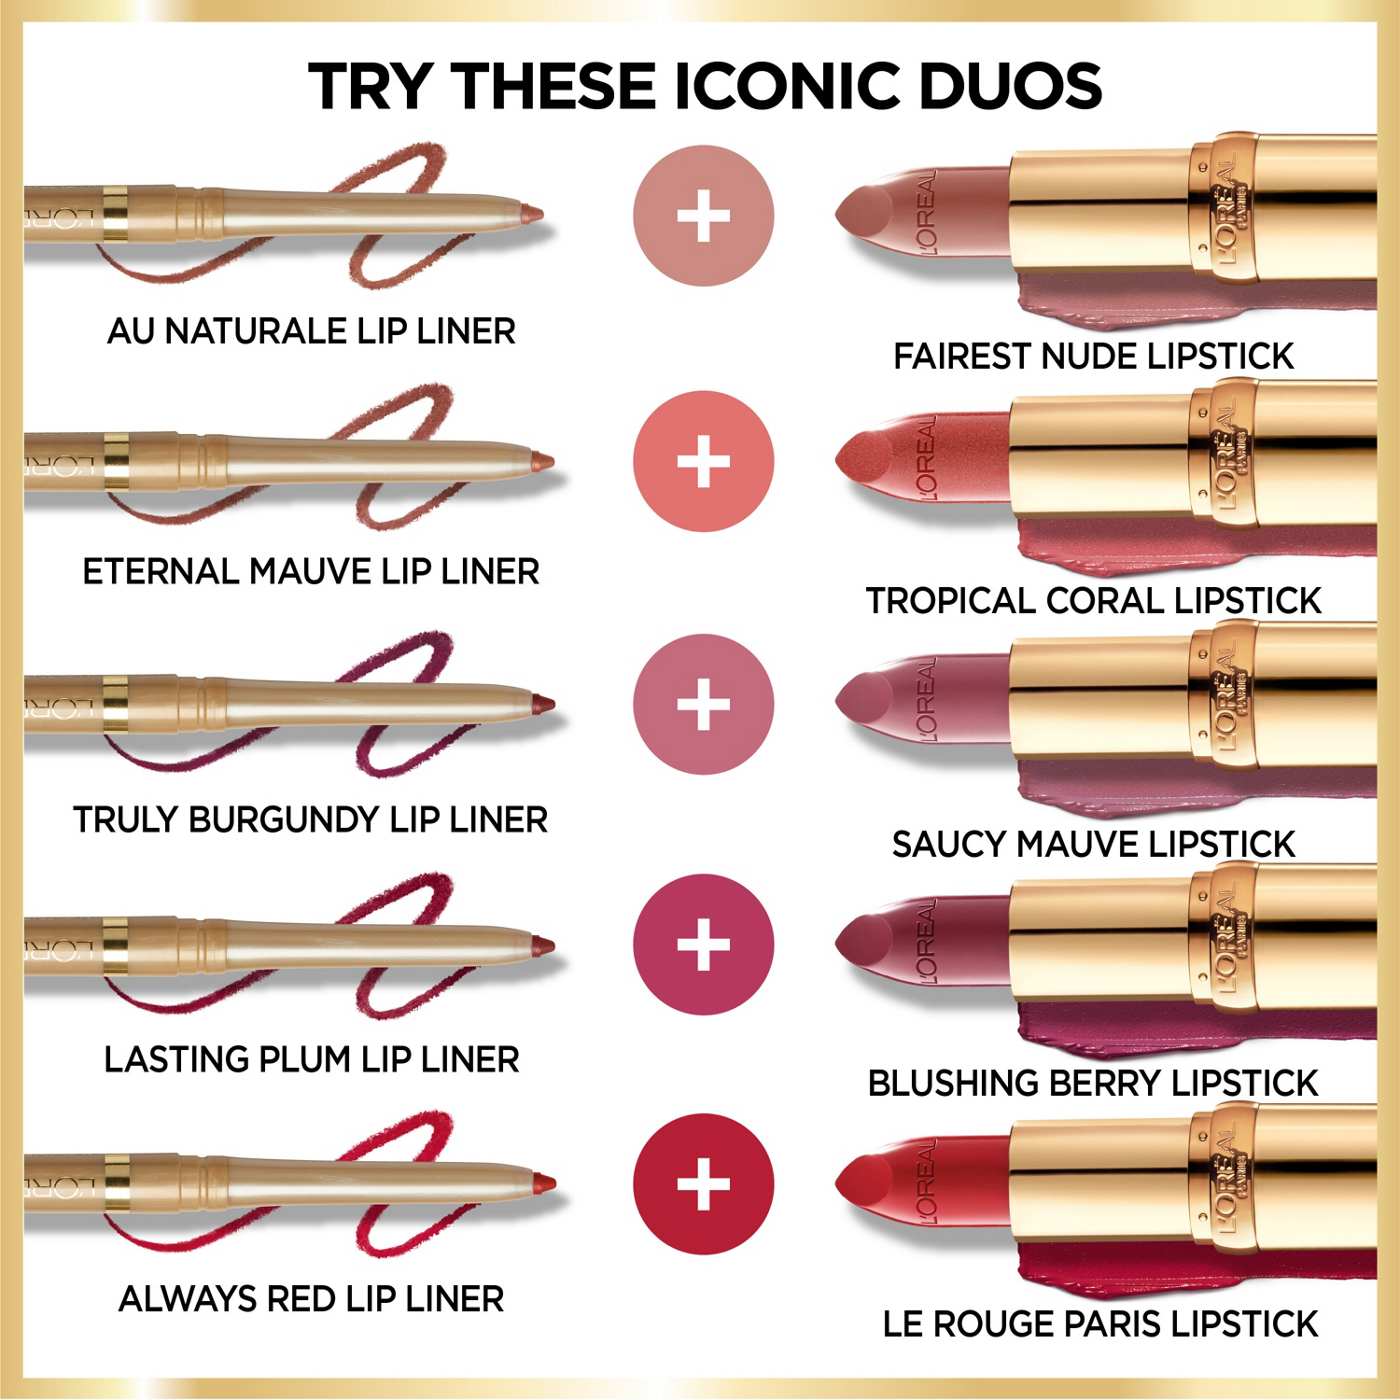 L'Oréal Paris Colour Riche Original Satin Lipstick - Plum Explosion; image 2 of 4